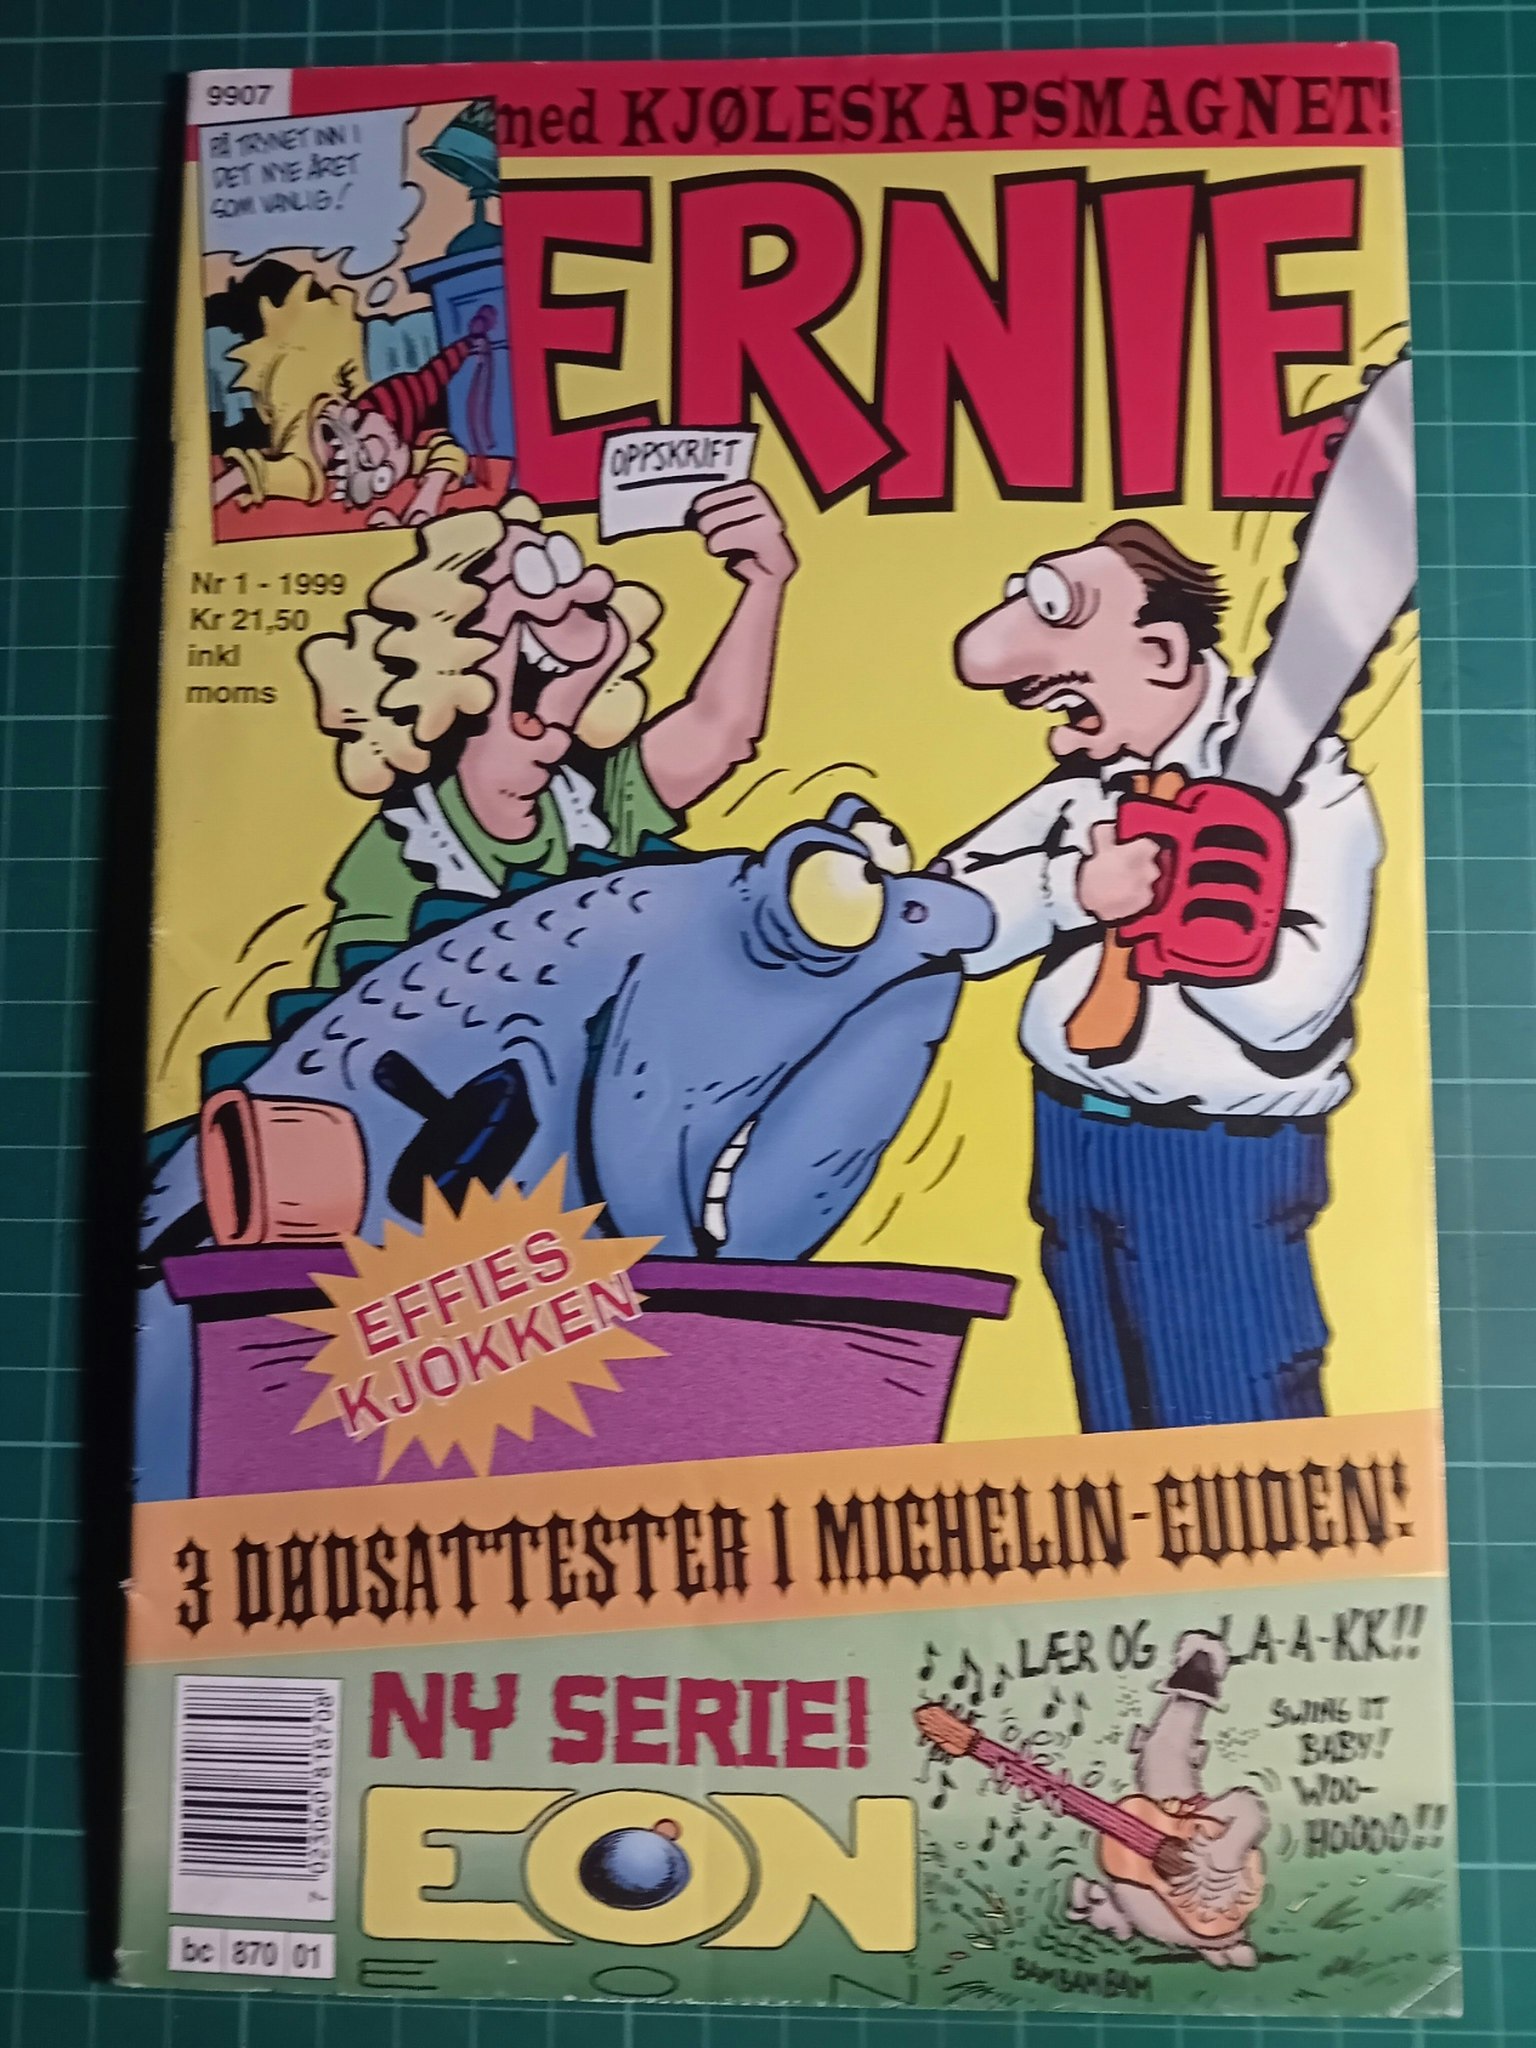 Ernie 1999 - 01